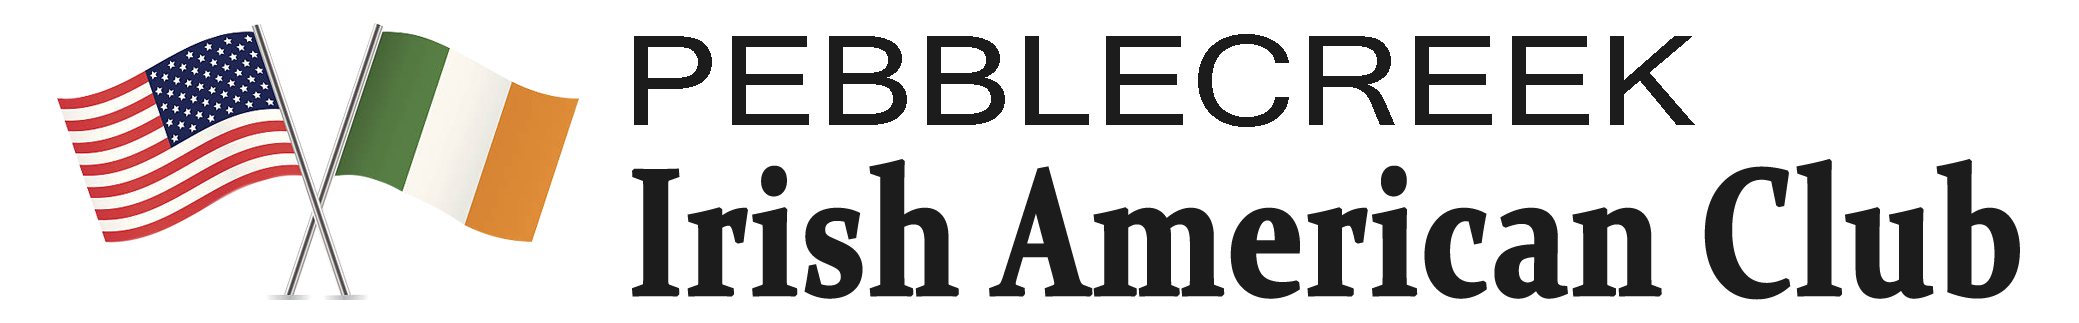 Pebblecreek Irish American Club In Goodyear Arizona